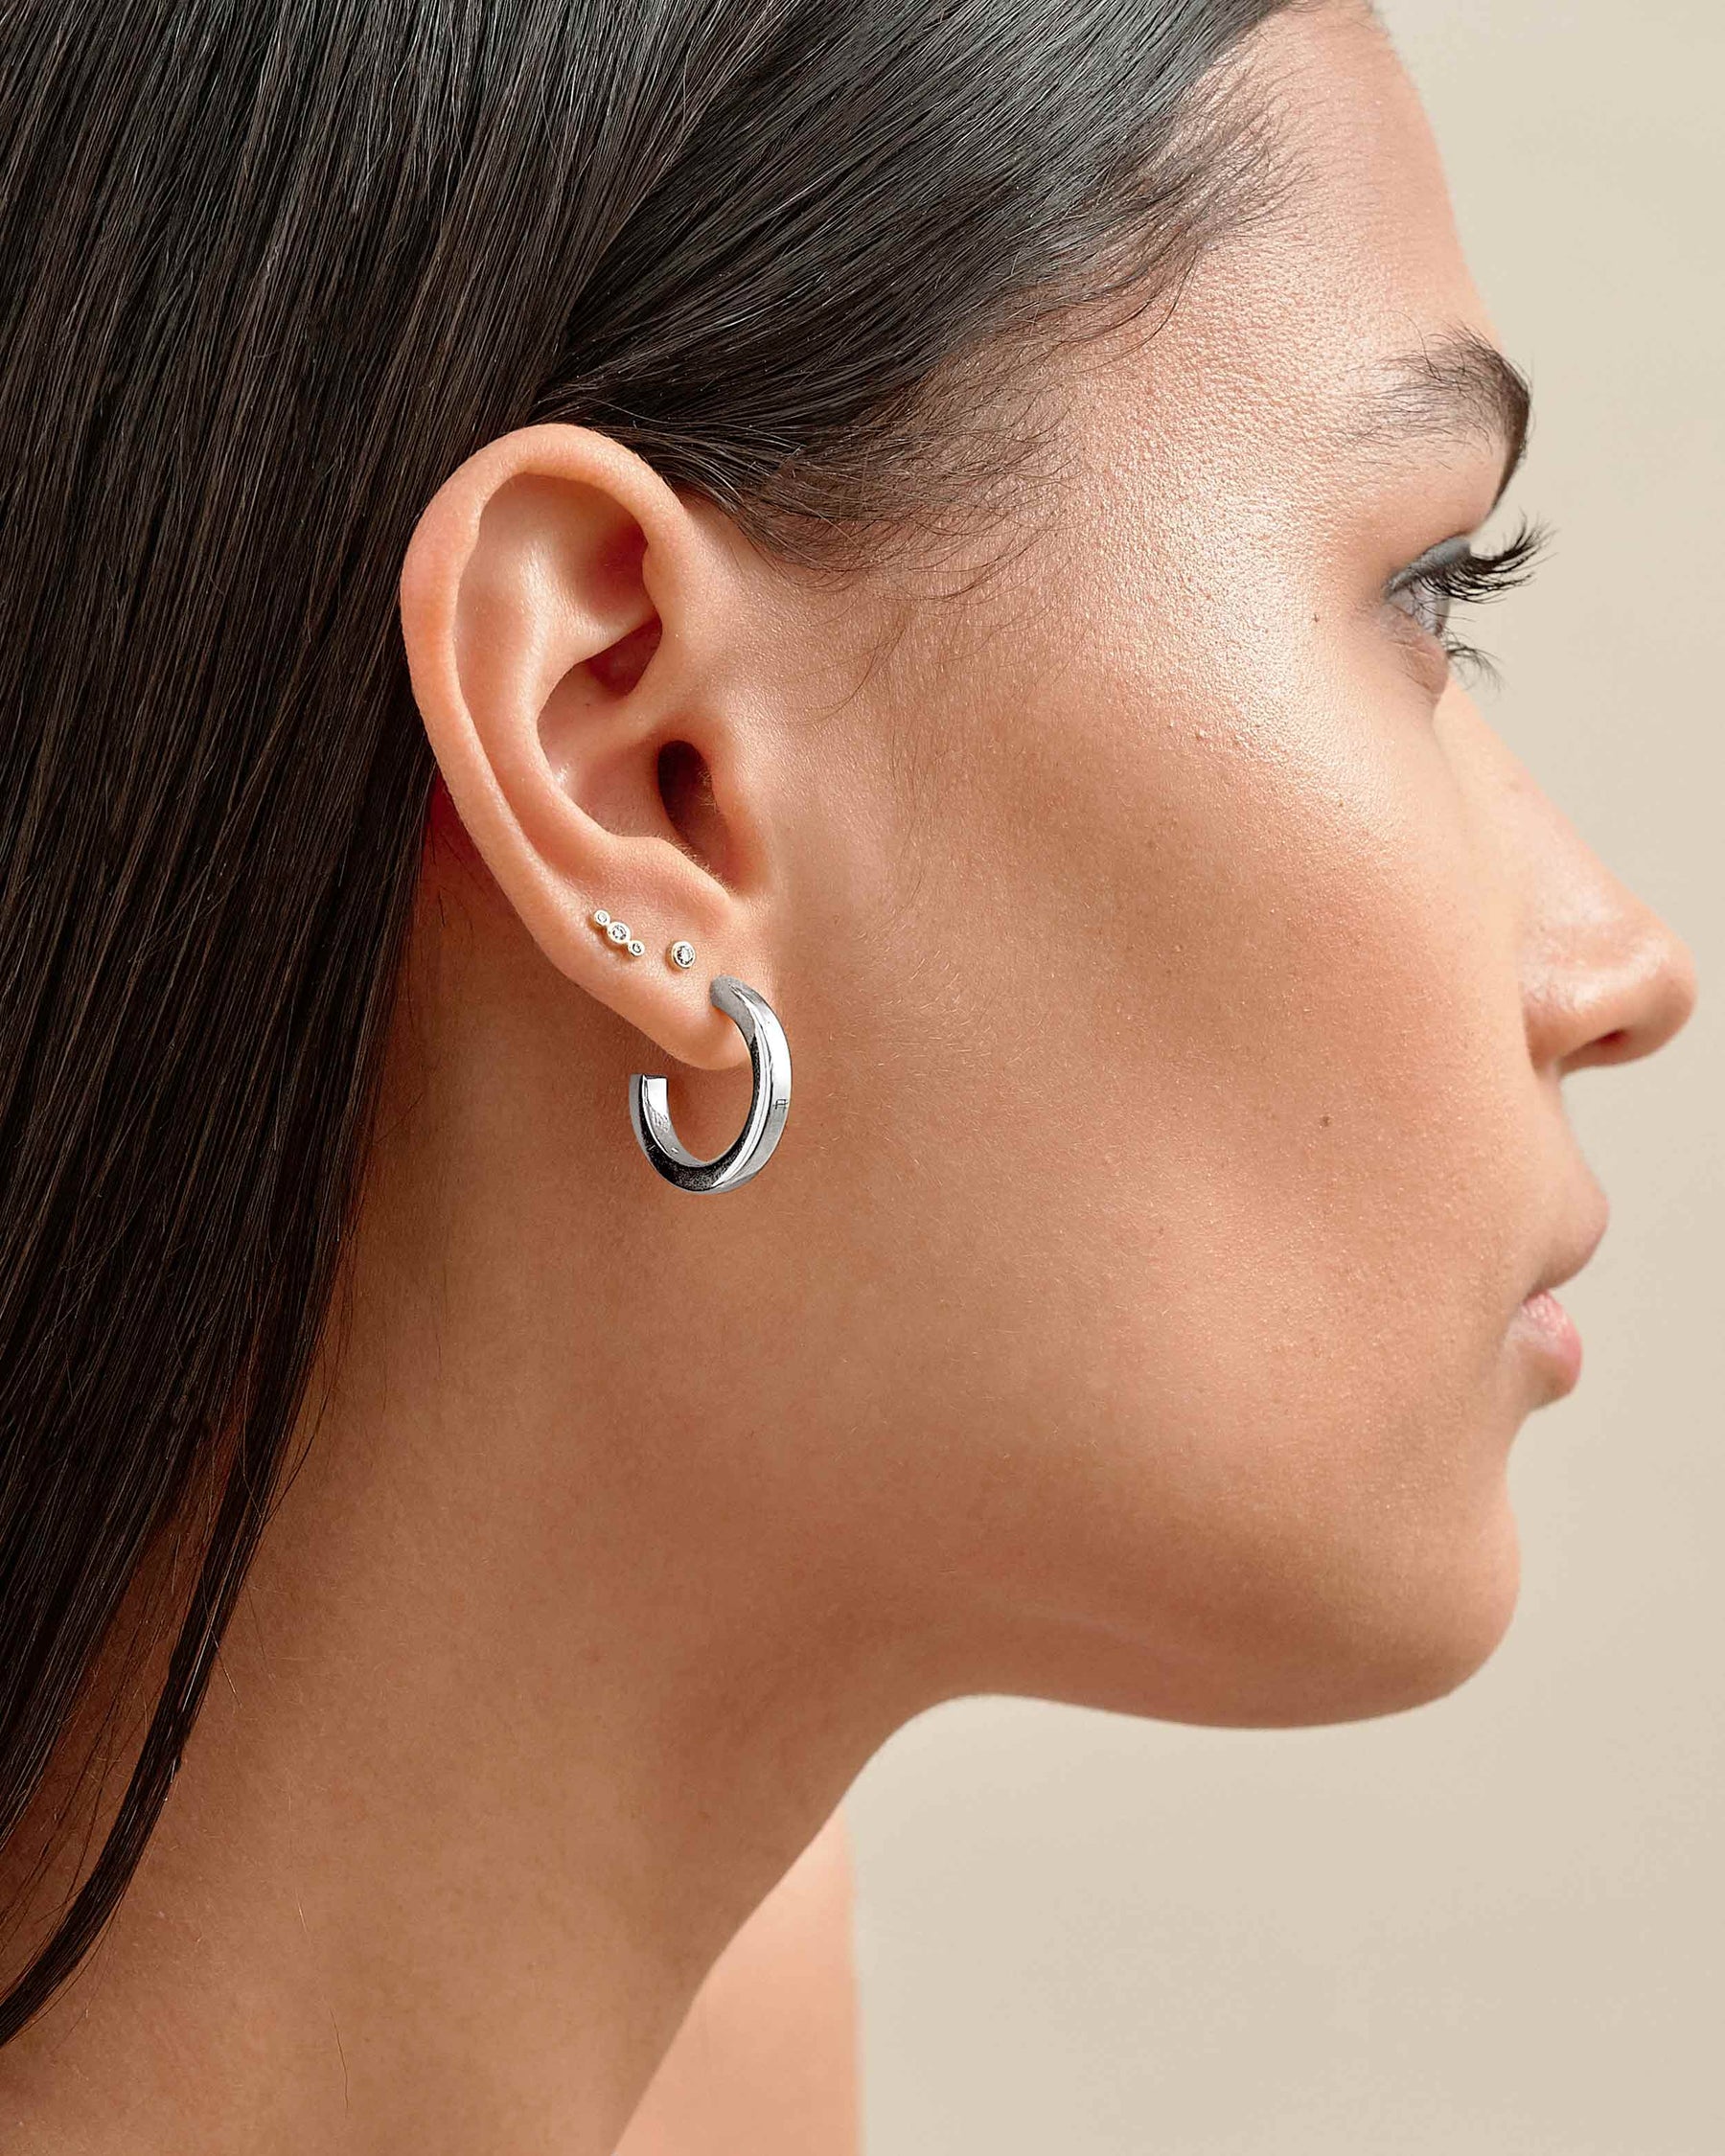 Elegant Sterling Silver Medium Hammered Hoop Earrings - Tranquil Sky Jewelry